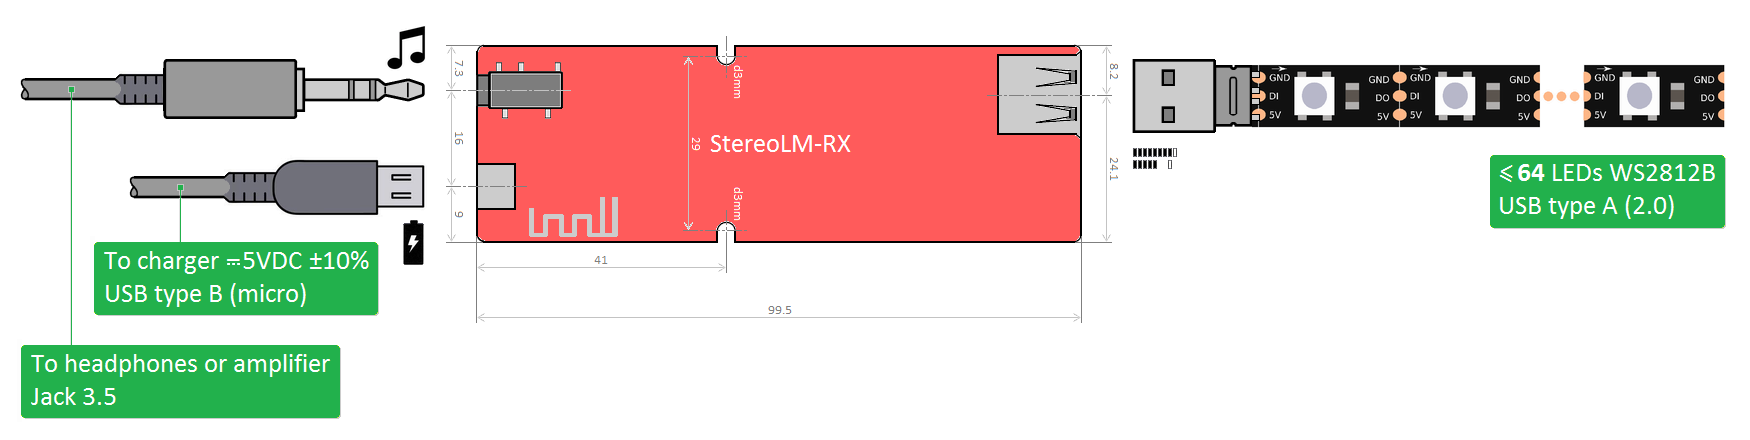 StereoLM-RX - Block Diagram